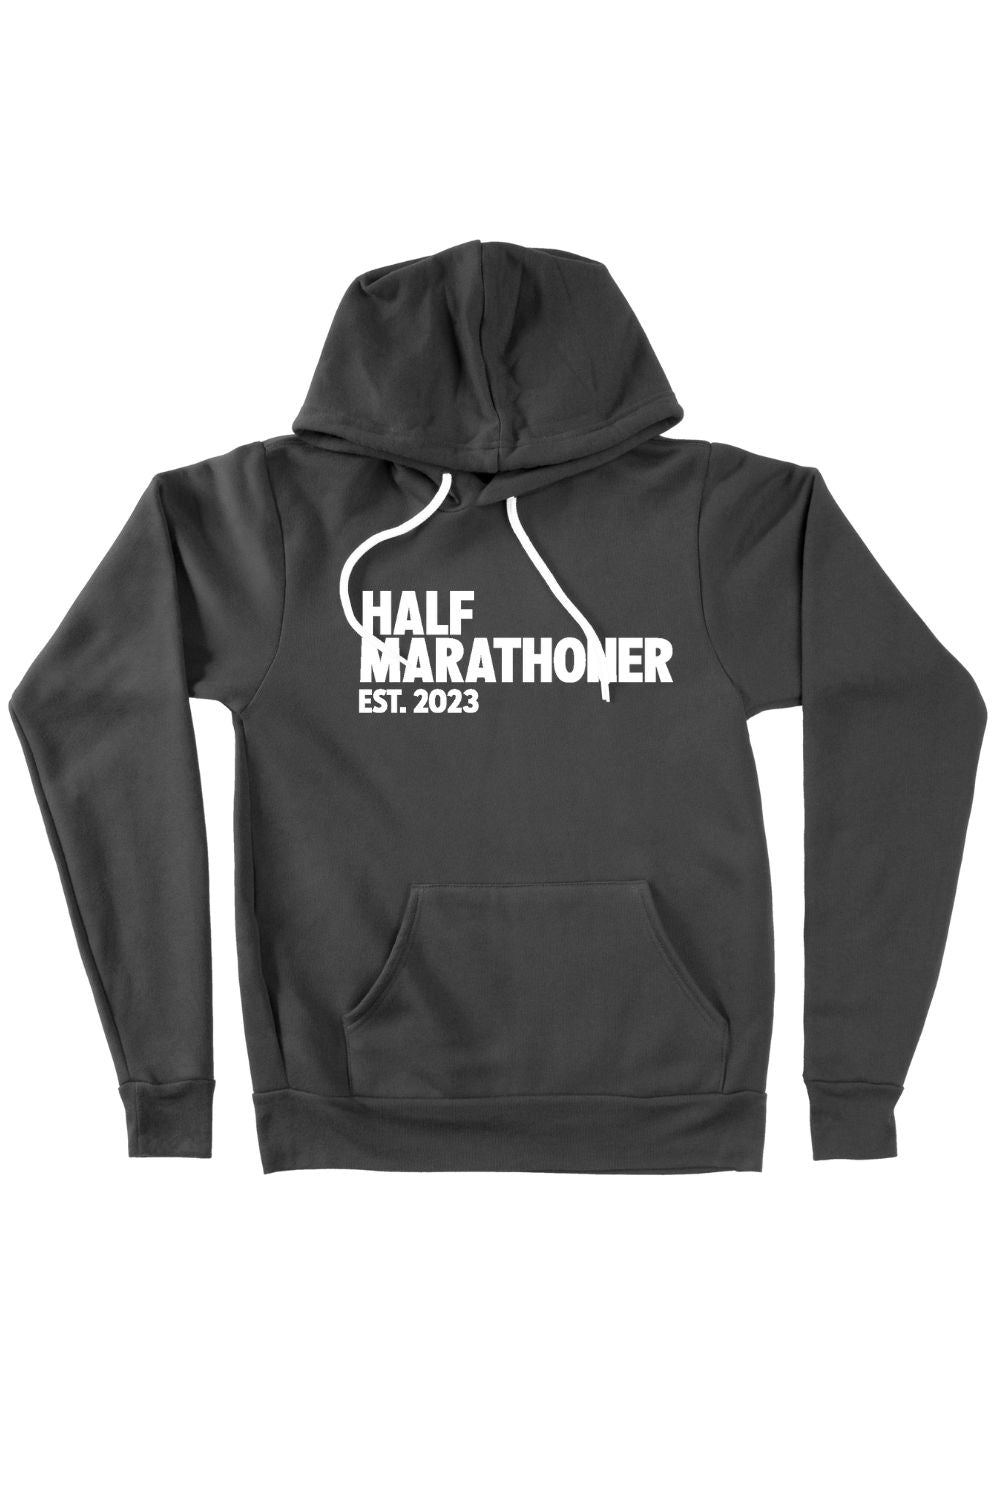 Half Marathoner EST 2023 Hoodie